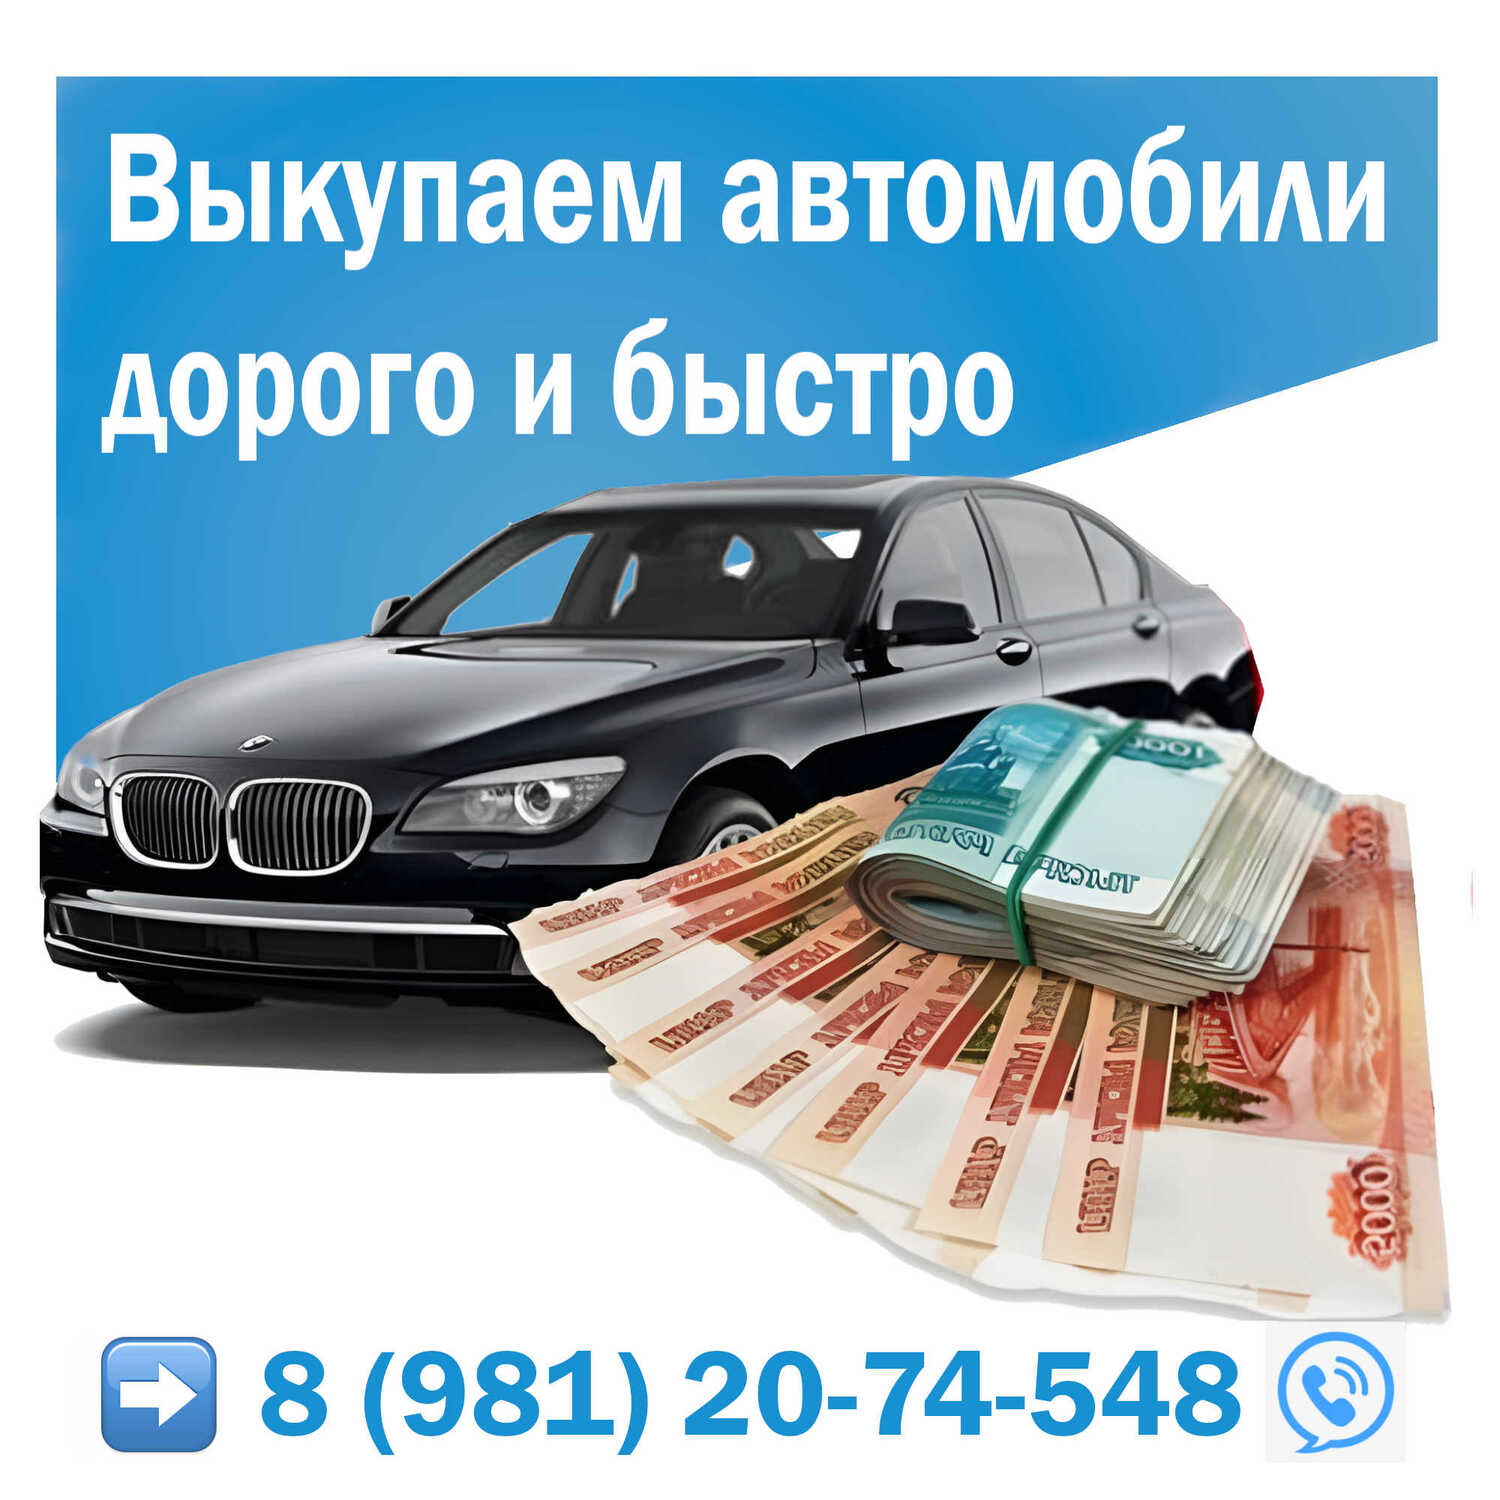 Выкуп автомобилей с пробегом в СПб и ЛО